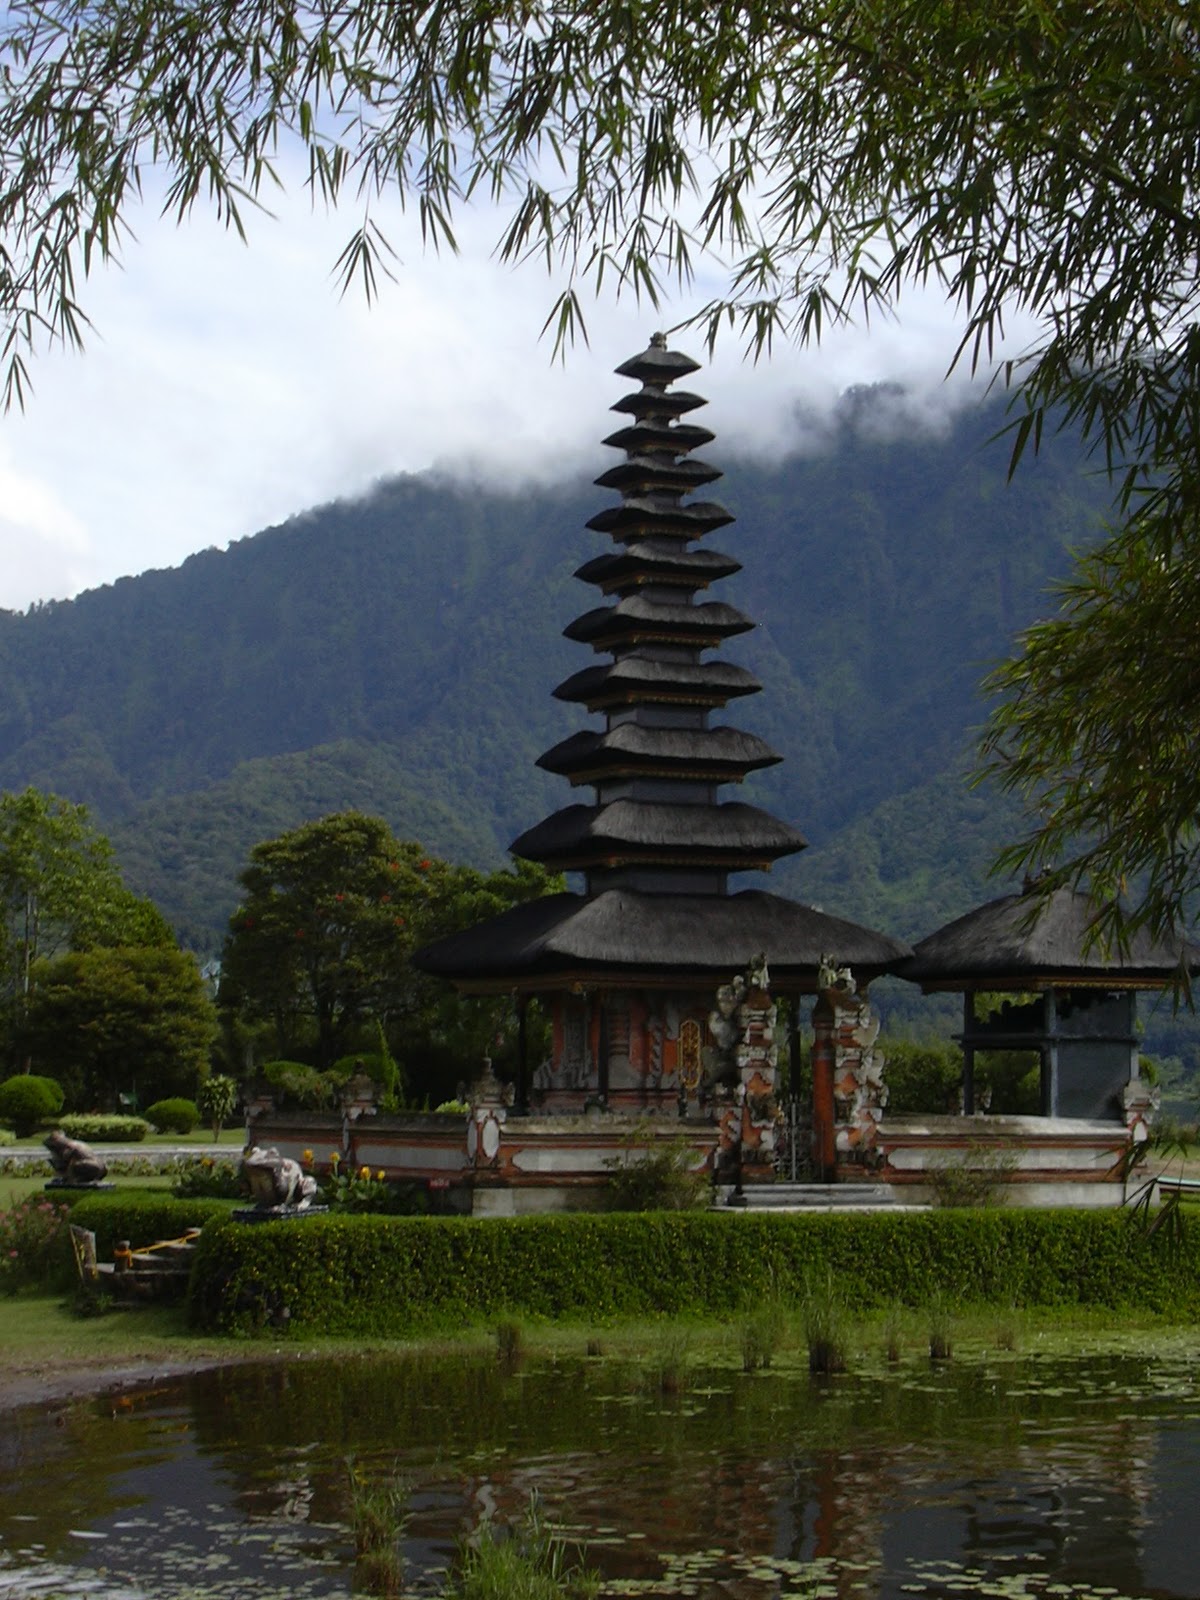 Tourism in Bali isVery Beautiful: Ulun Danu Temple, Bali-Indonesia